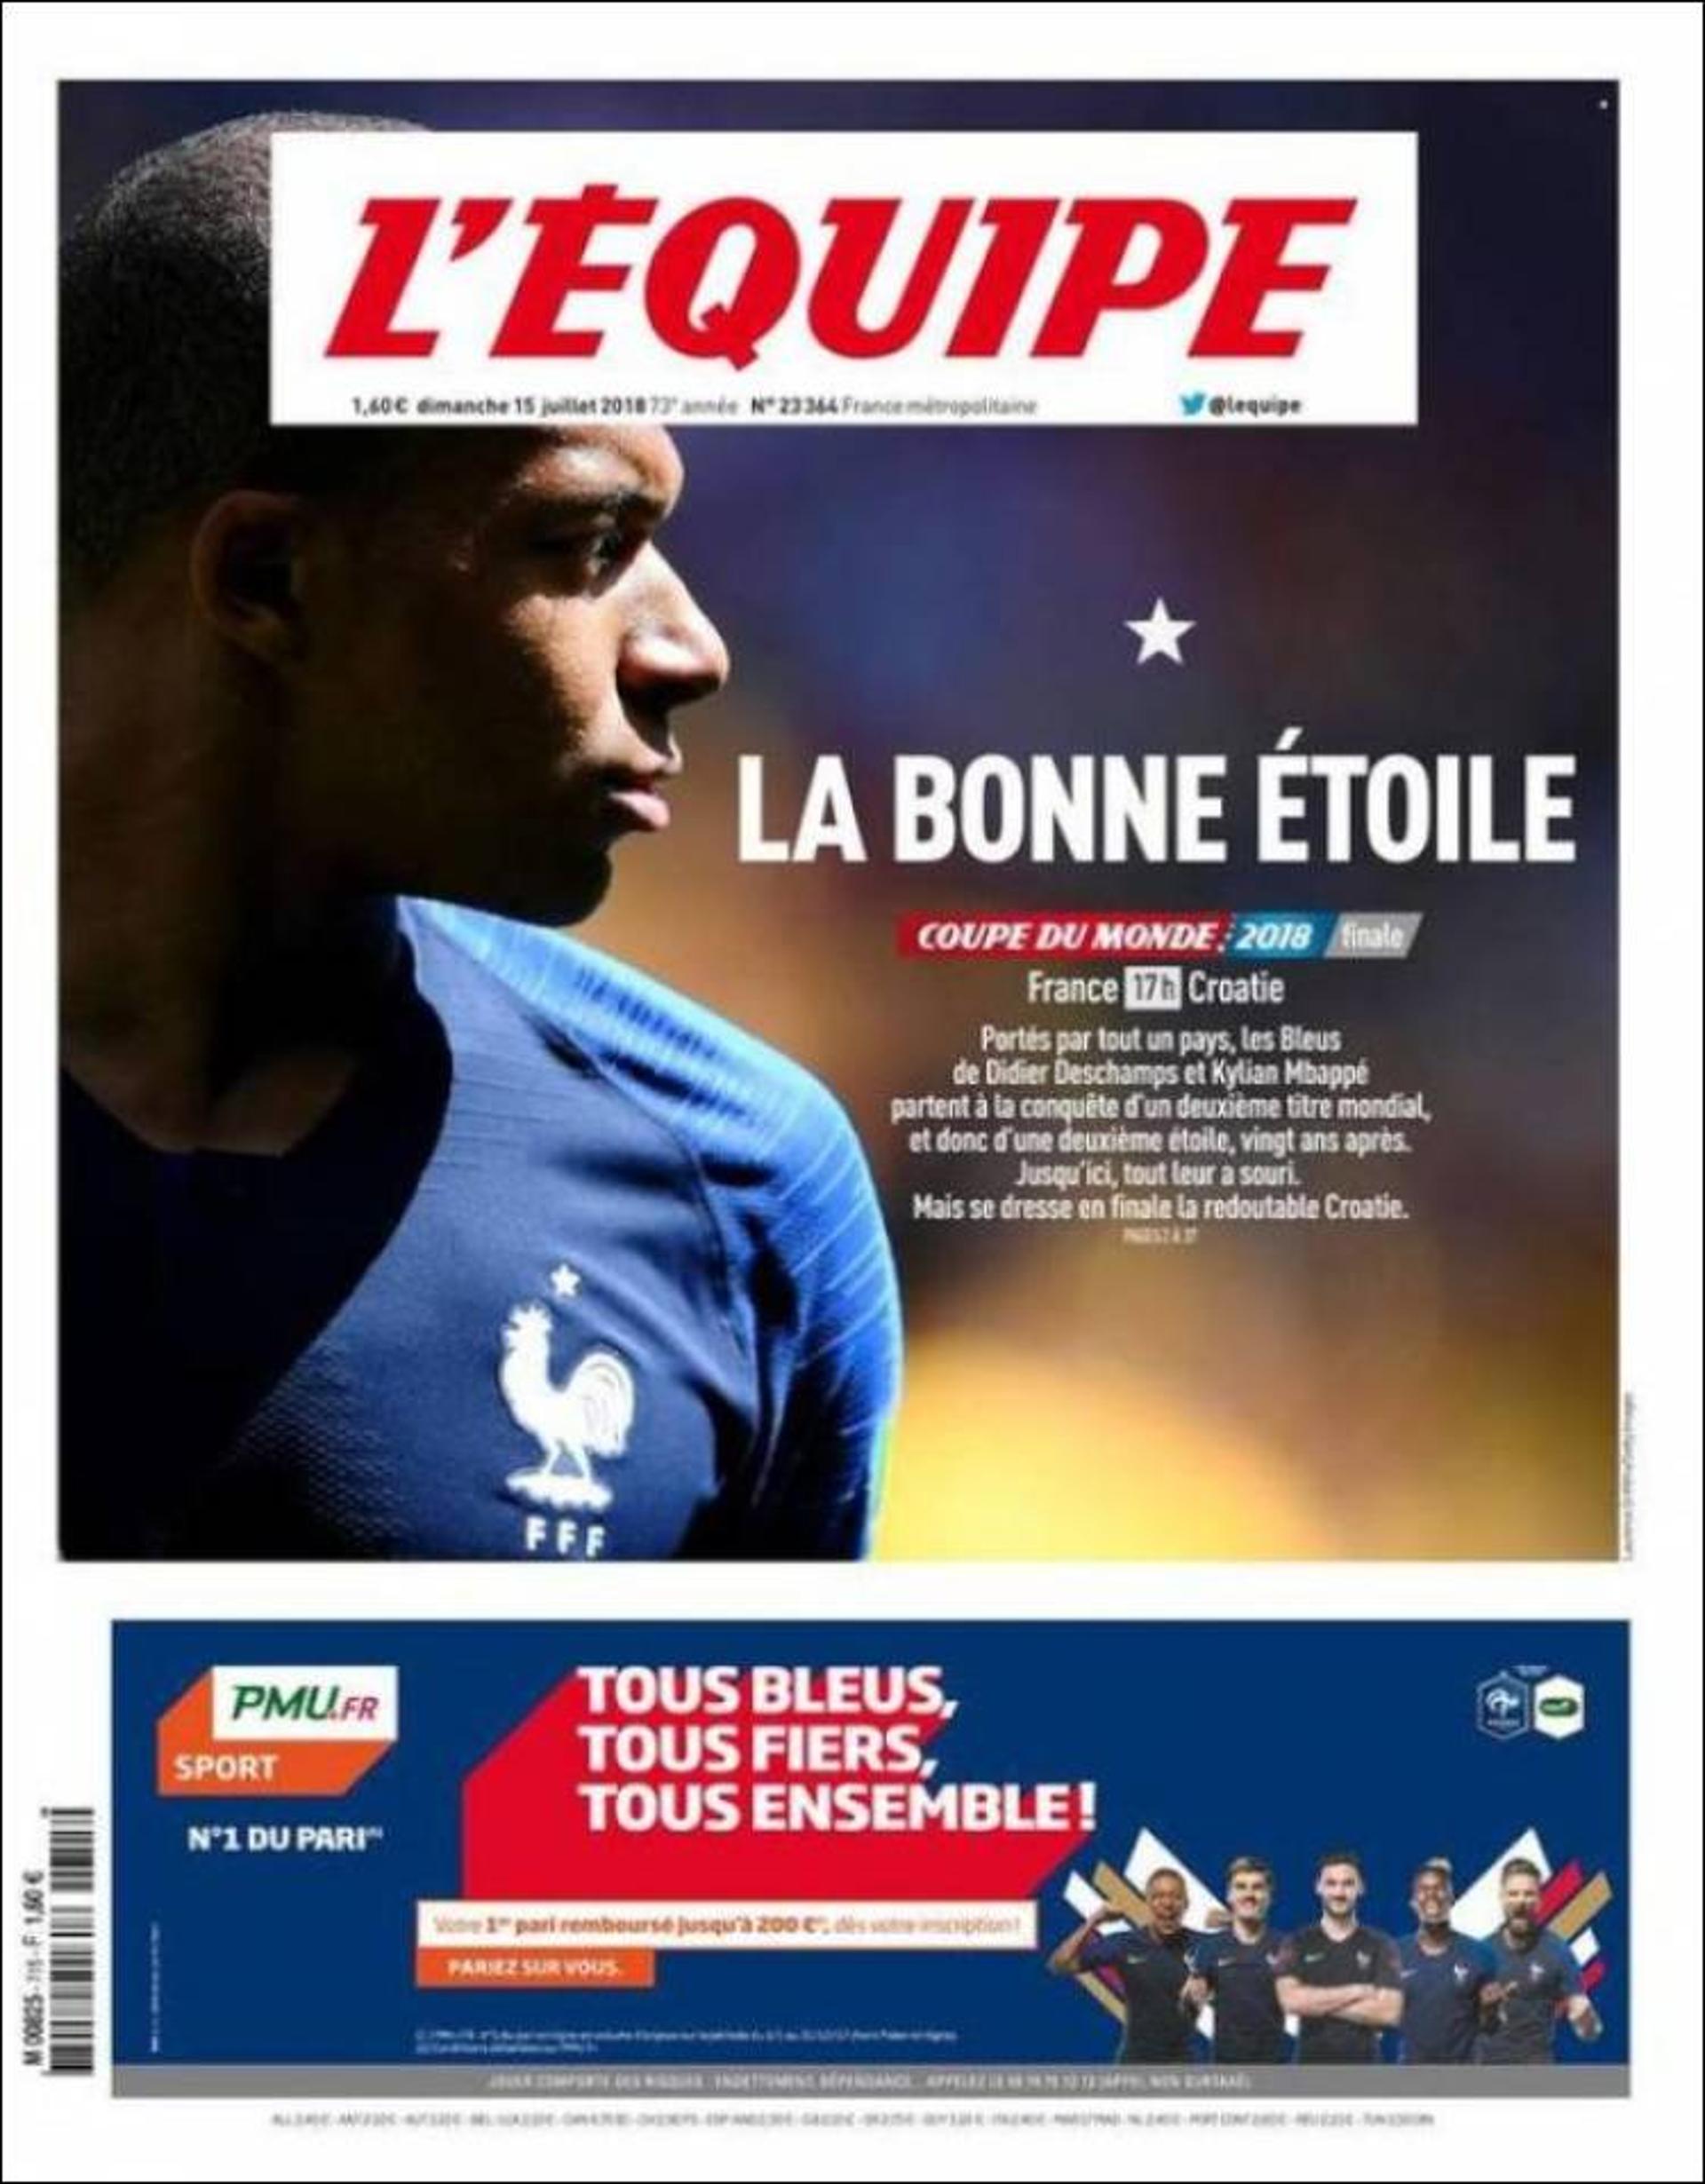 O diário francês L'Equipe estampa em sua capa: "A boa estrela", em uma referência à estrela que significa o título mundial e ao jogador Mbappé, craque da seleção.